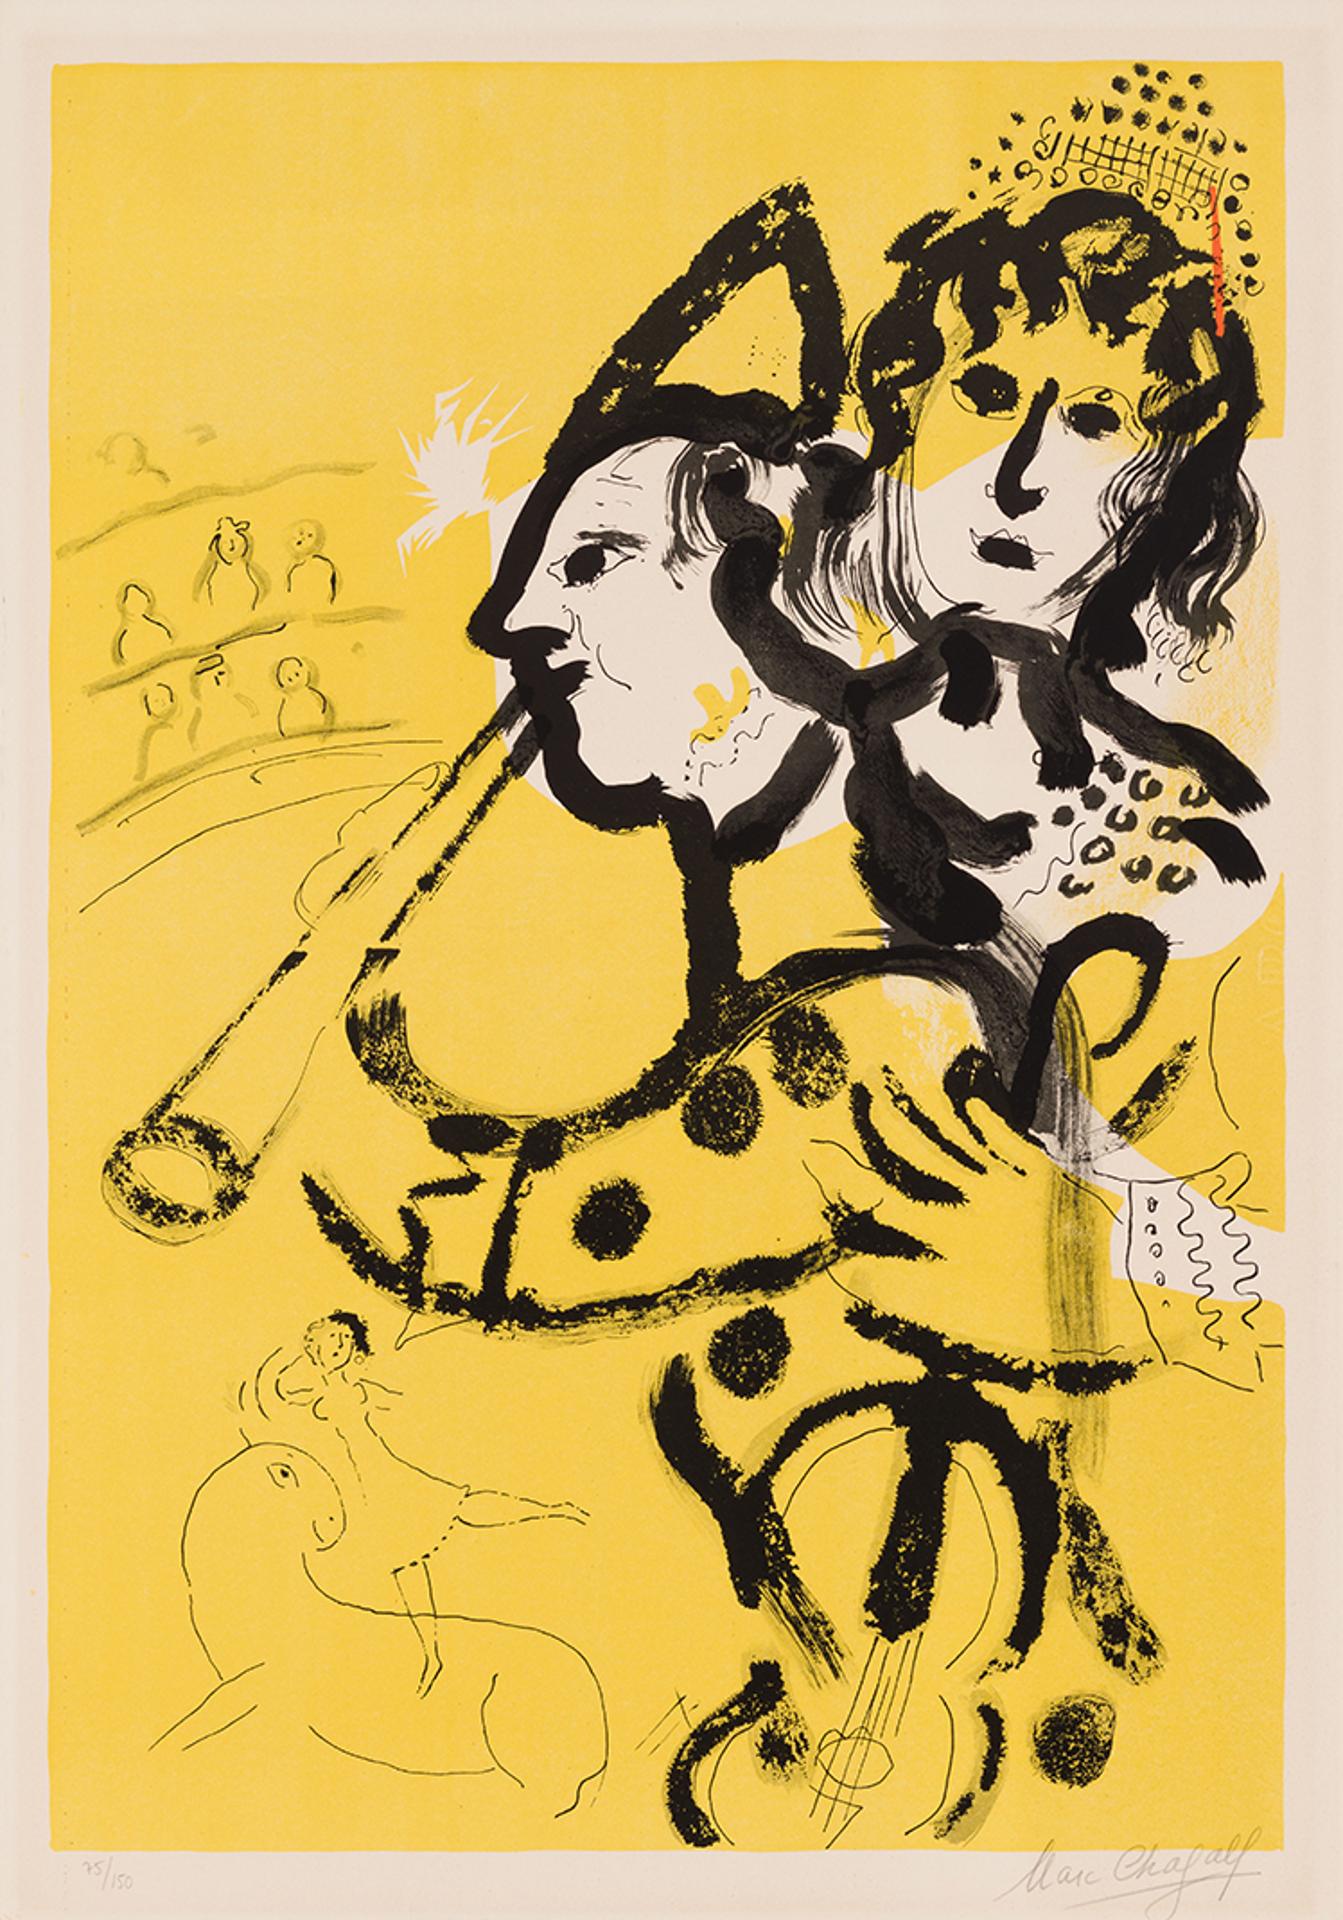 Marc Chagall (1887-1985) - Musical Clown